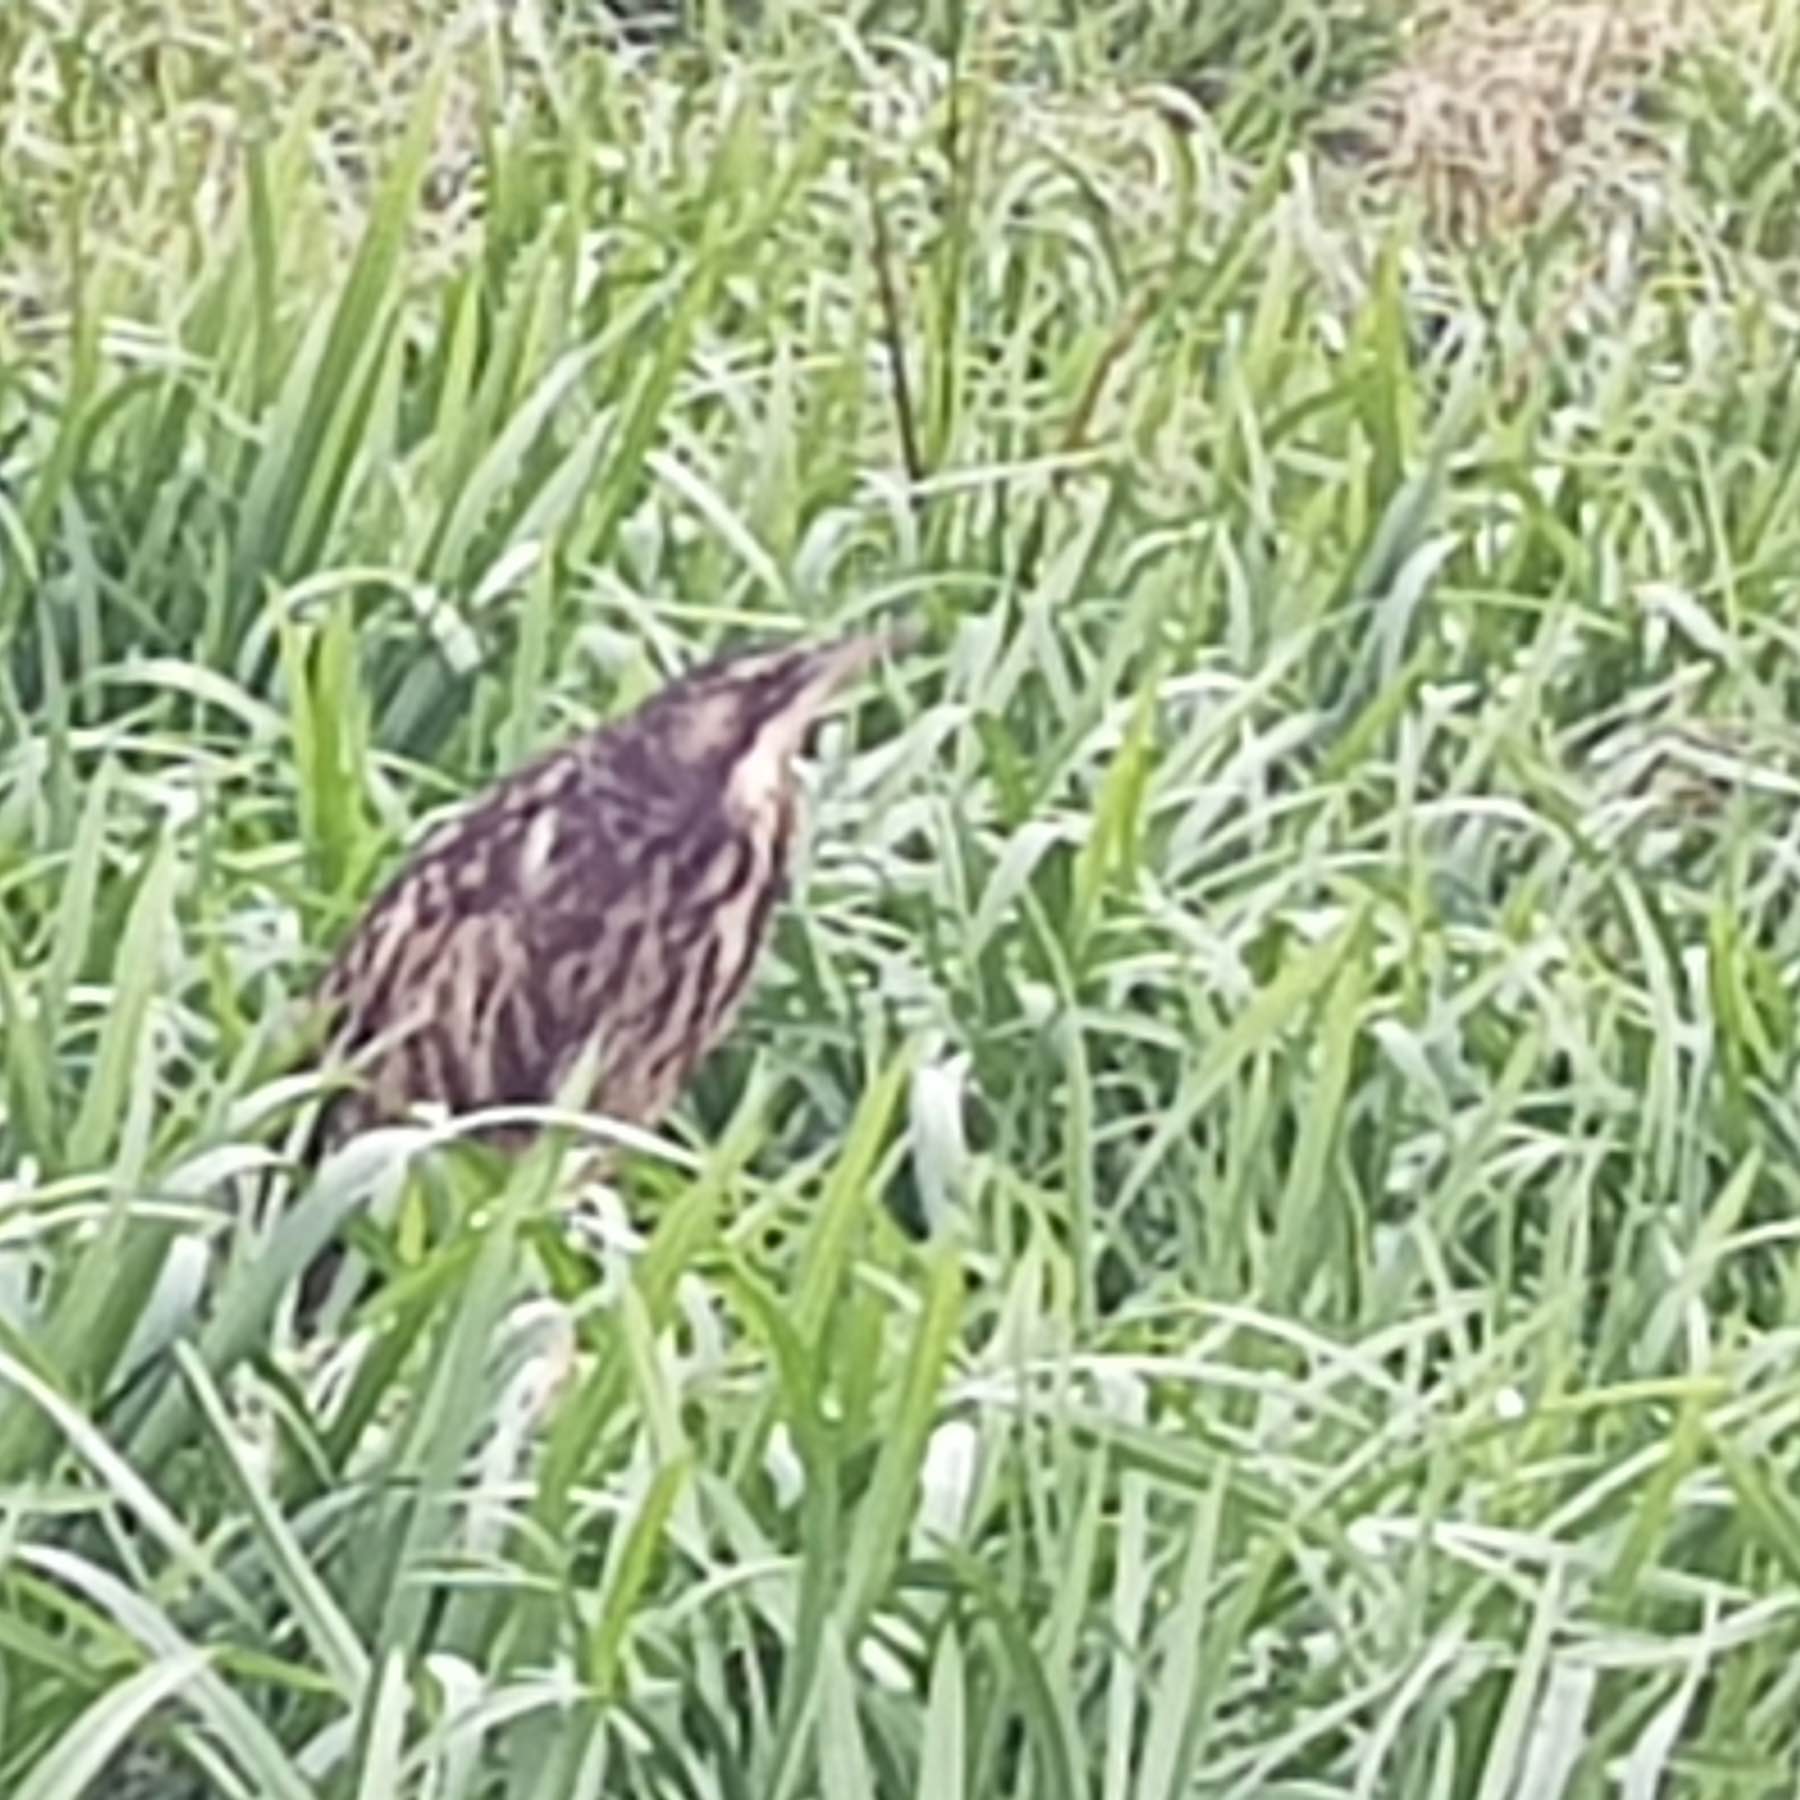 Brown stripy bird in grass. 